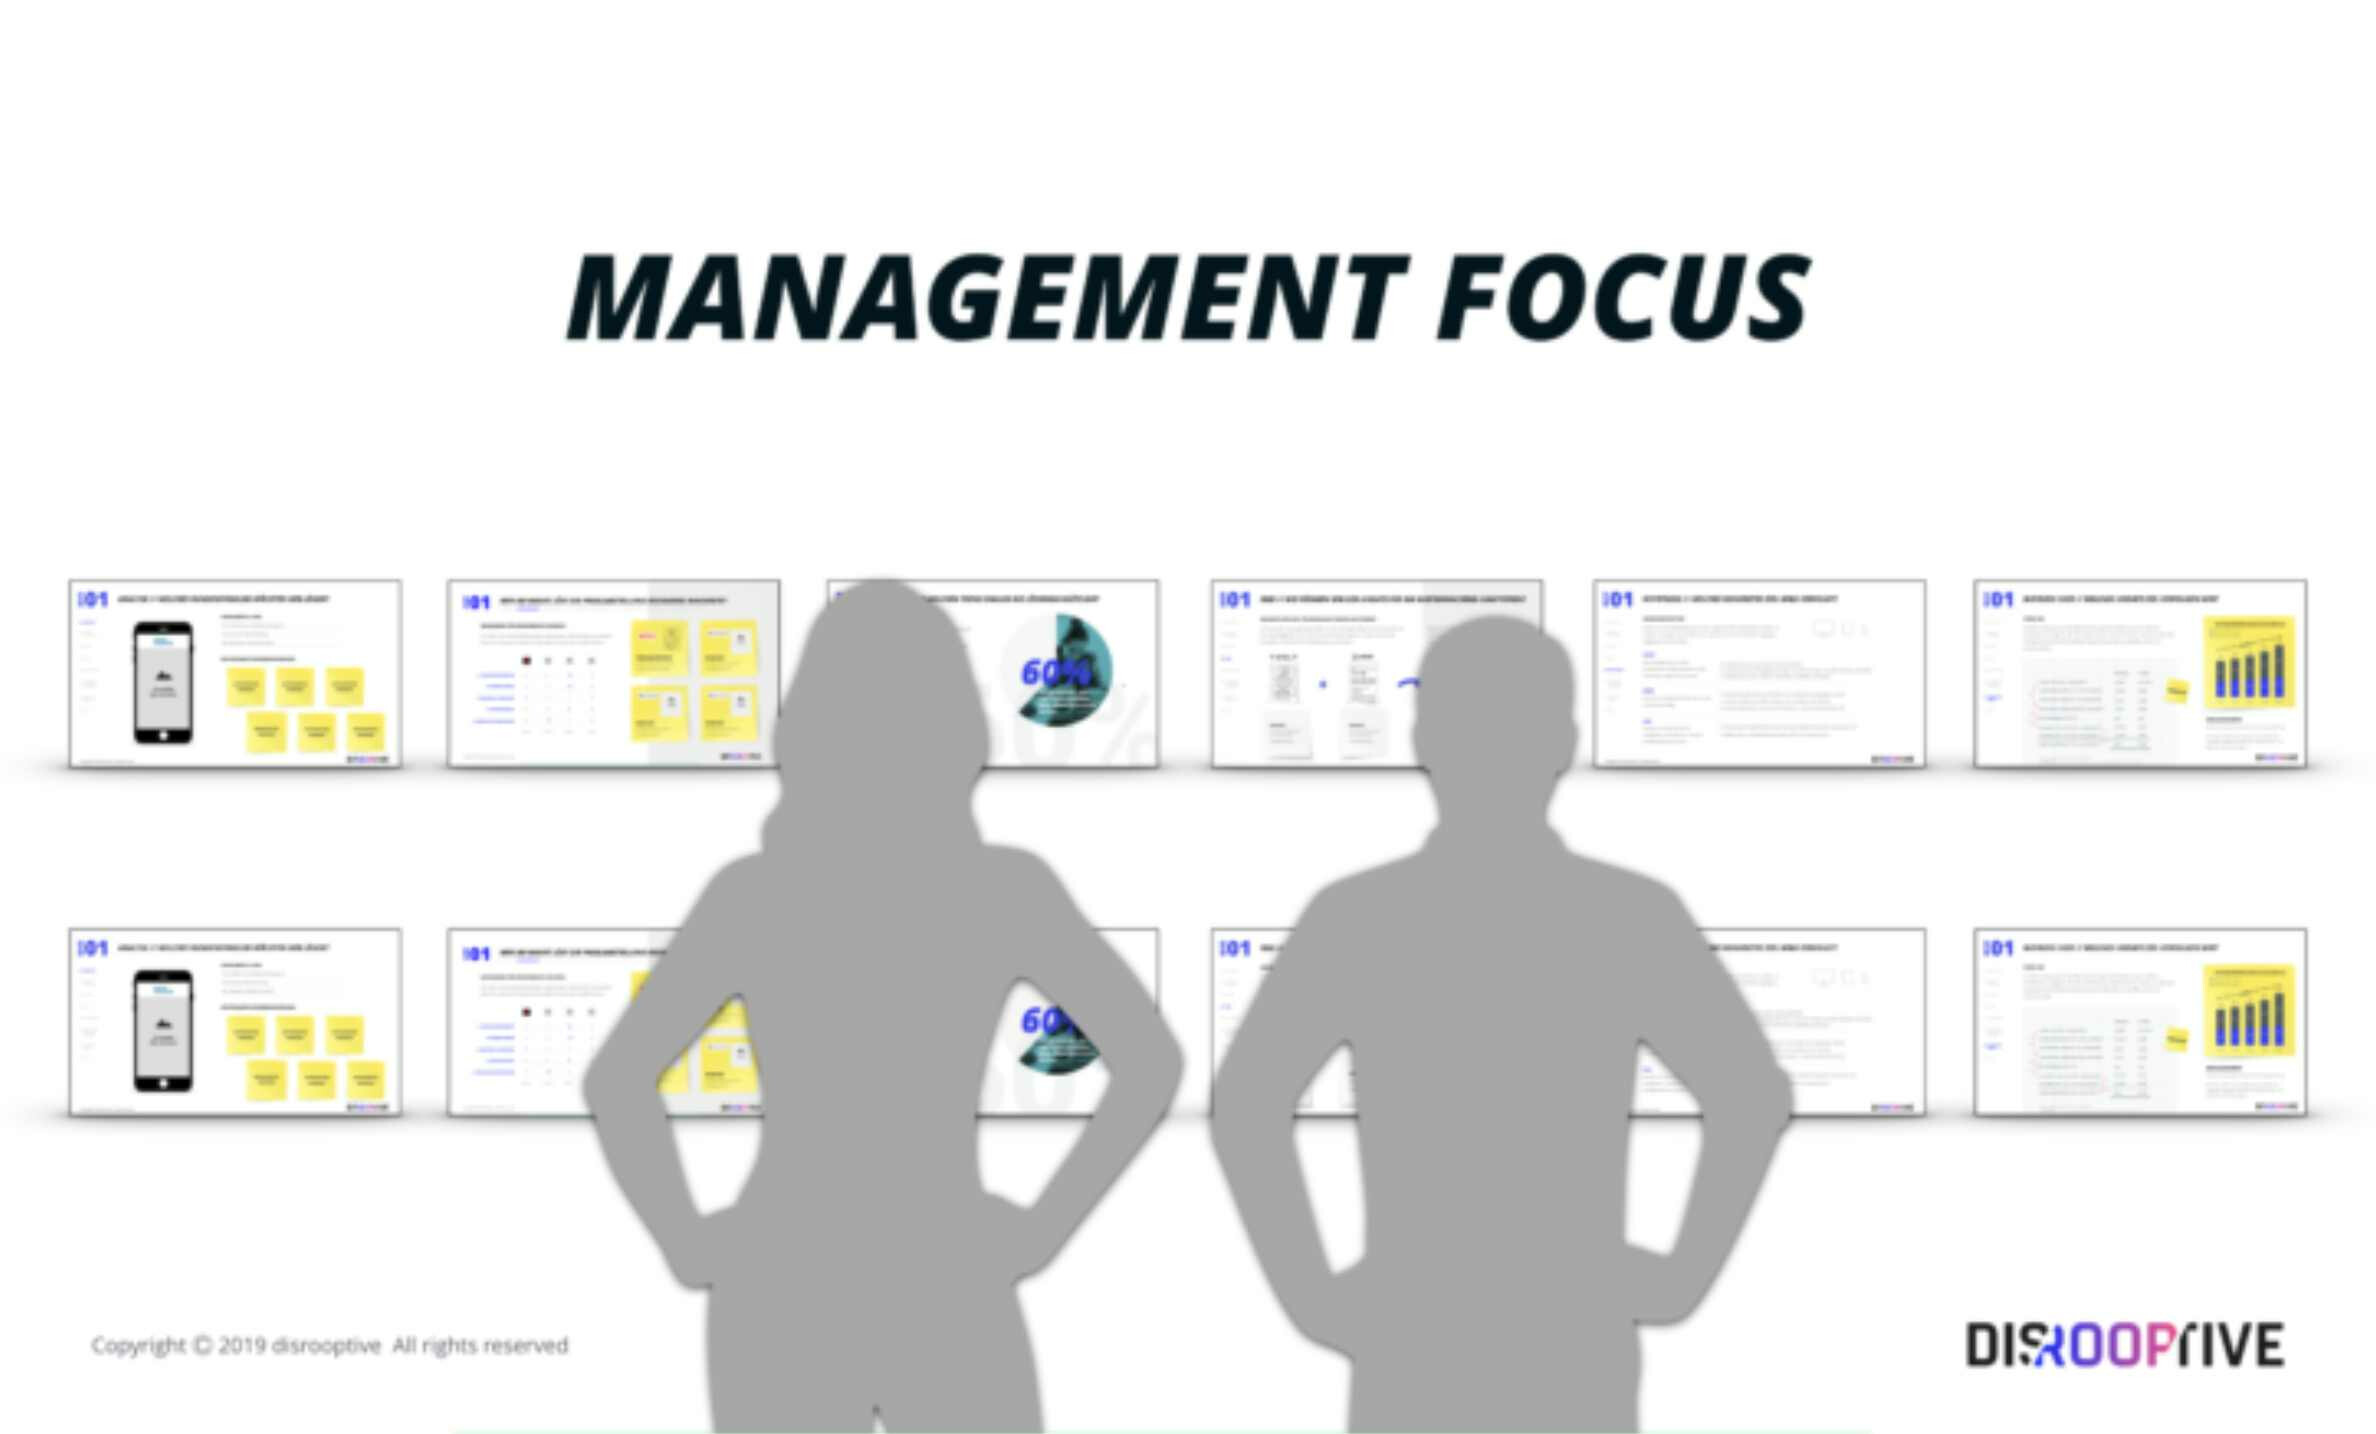 Management focus